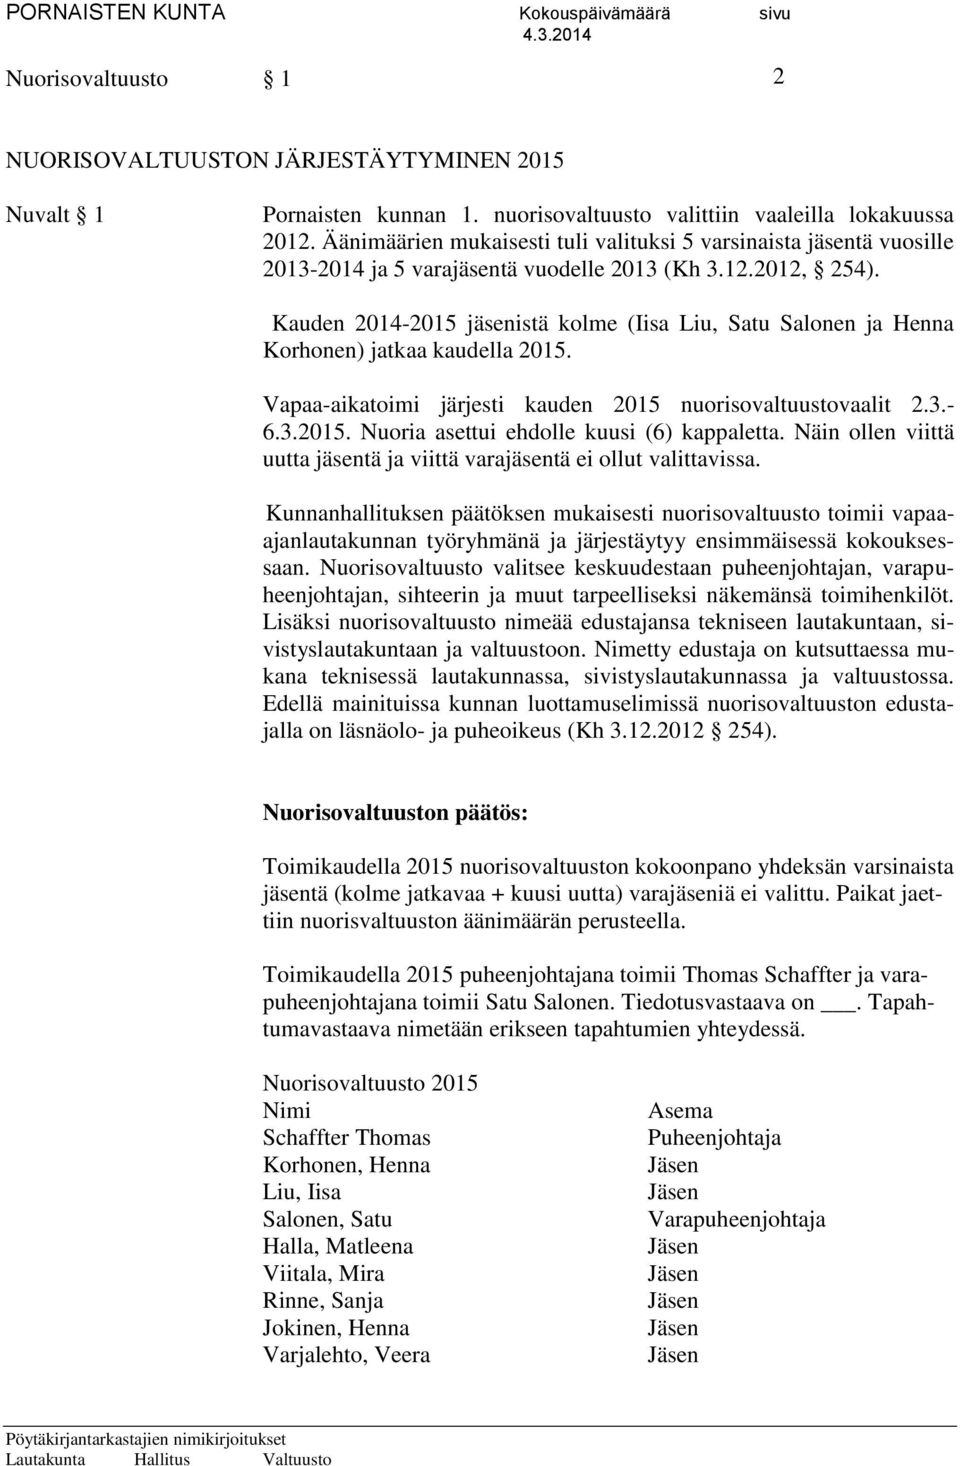 Kauden 2014-2015 jäsenistä kolme (Iisa Liu, Satu Salonen ja Henna Korhonen) jatkaa kaudella 2015. Vapaa-aikatoimi järjesti kauden 2015 nuorisovaltuustovaalit 2.3.- 6.3.2015. Nuoria asettui ehdolle kuusi (6) kappaletta.